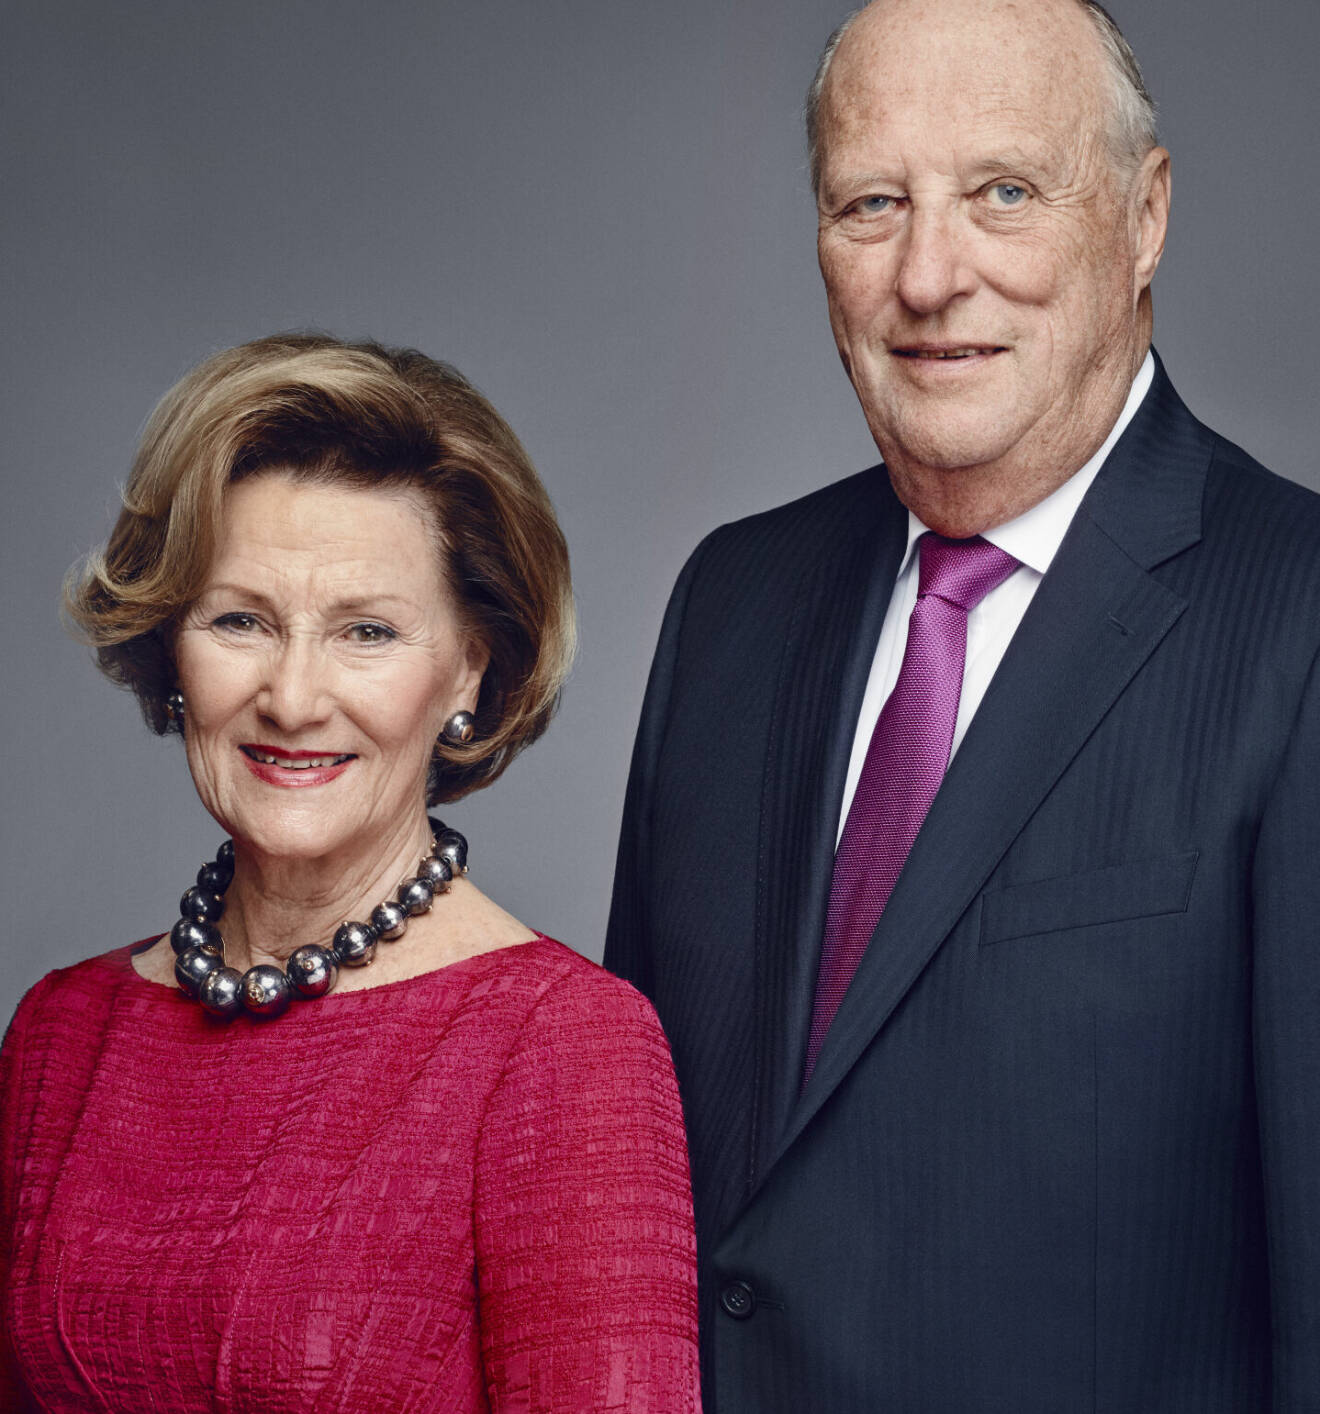 Kung Harald och drottning Sonja på hovets officiella bild